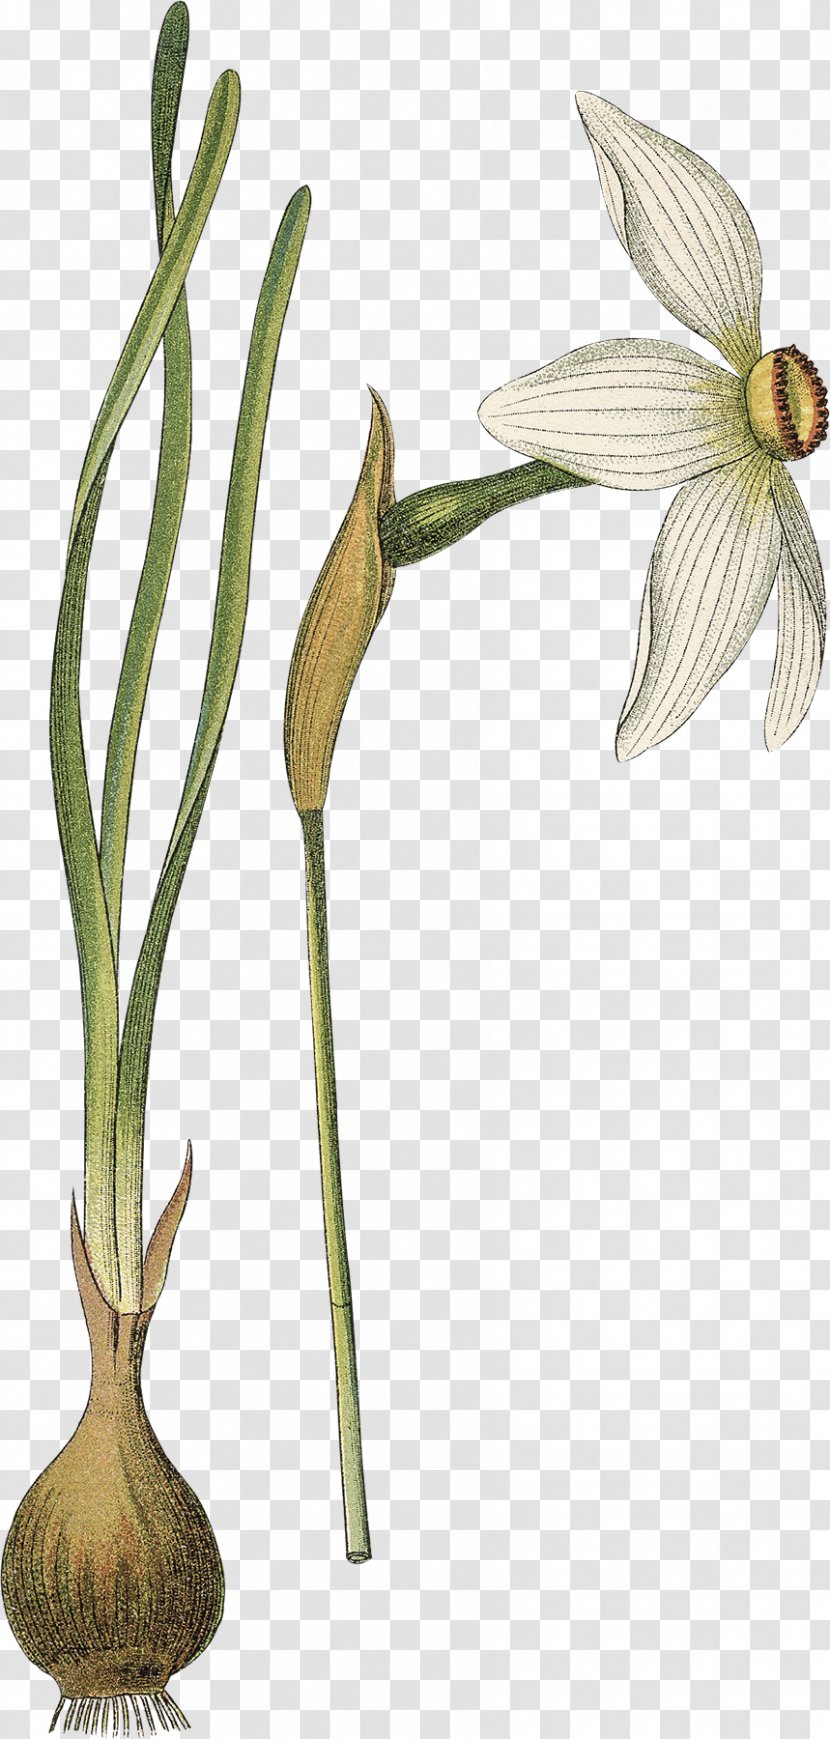 Poet's Narcissus Flower Botany Botanical Illustration Drawing - Flowering Plant Transparent PNG